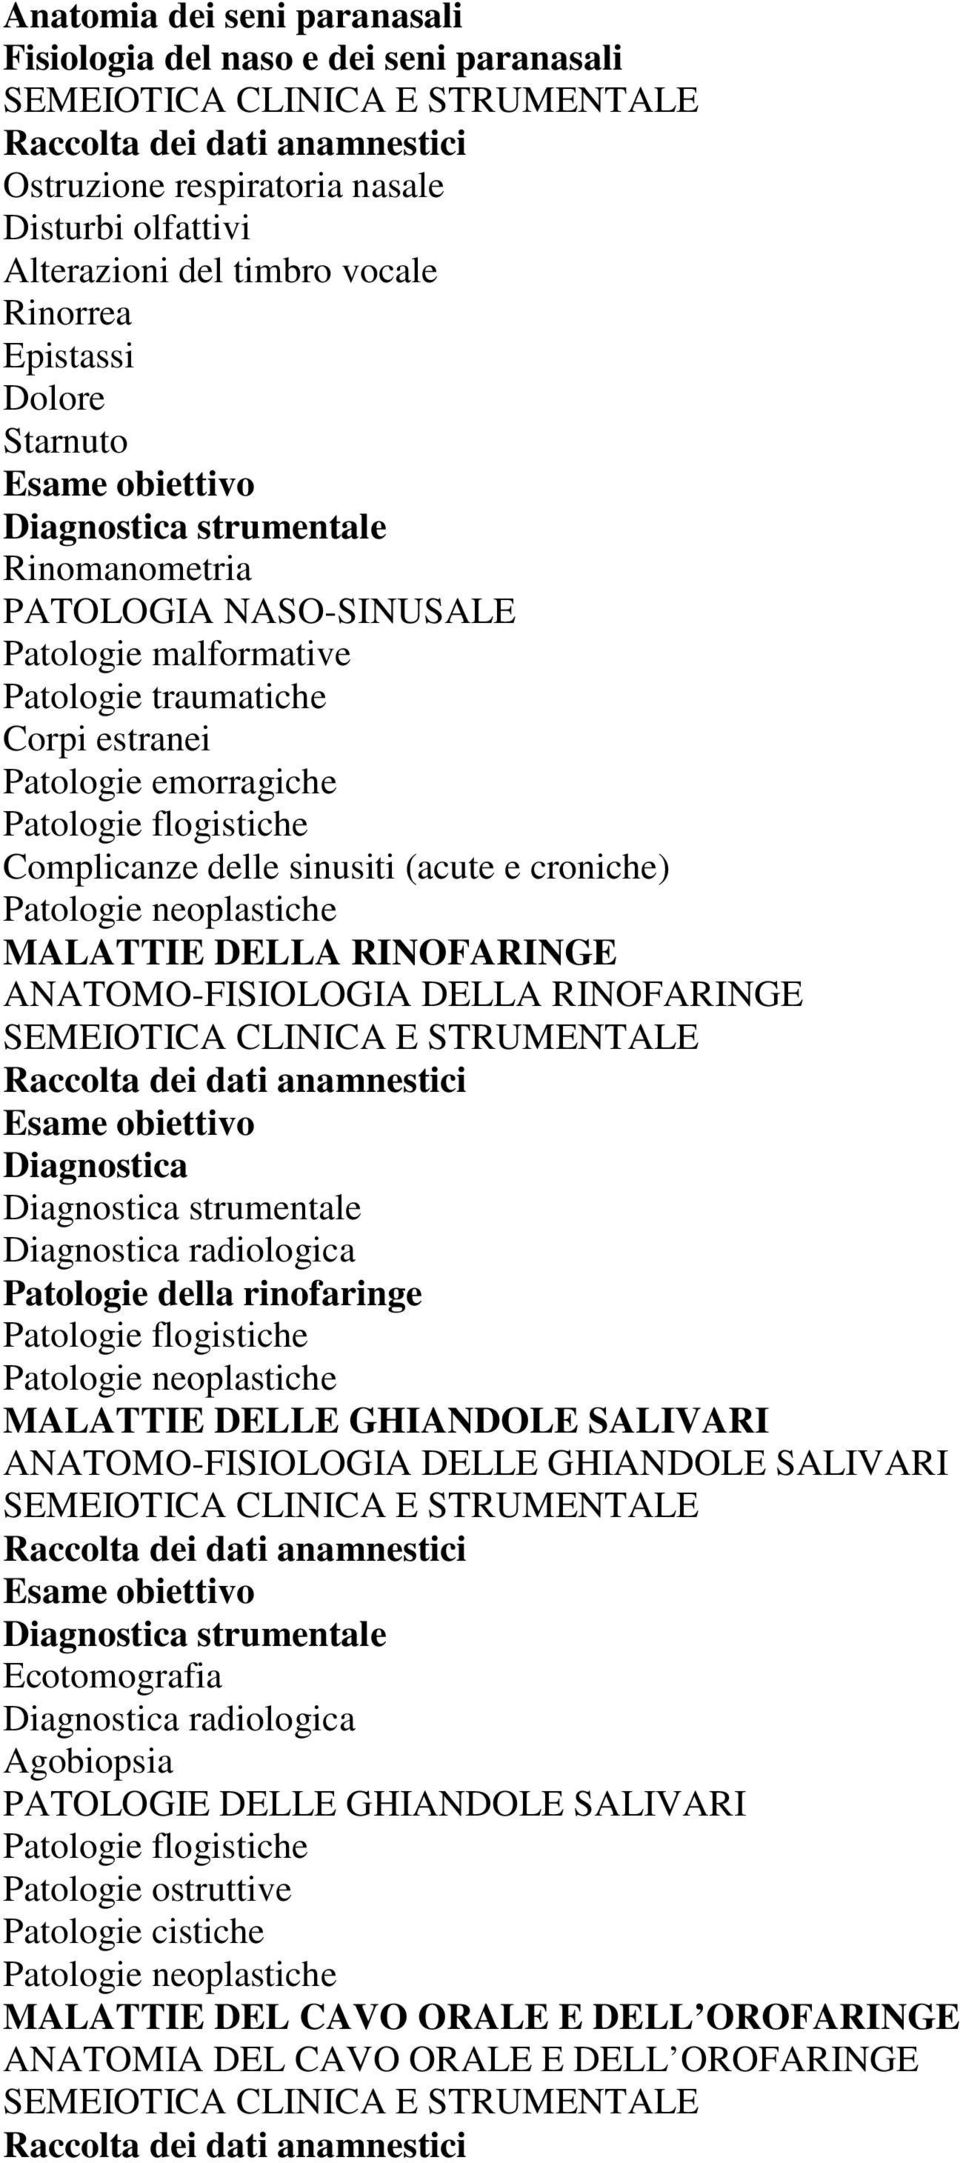 MALATTIE DELLA RINOFARINGE ANATOMO-FISIOLOGIA DELLA RINOFARINGE Diagnostica Patologie della rinofaringe MALATTIE DELLE GHIANDOLE SALIVARI ANATOMO-FISIOLOGIA DELLE GHIANDOLE